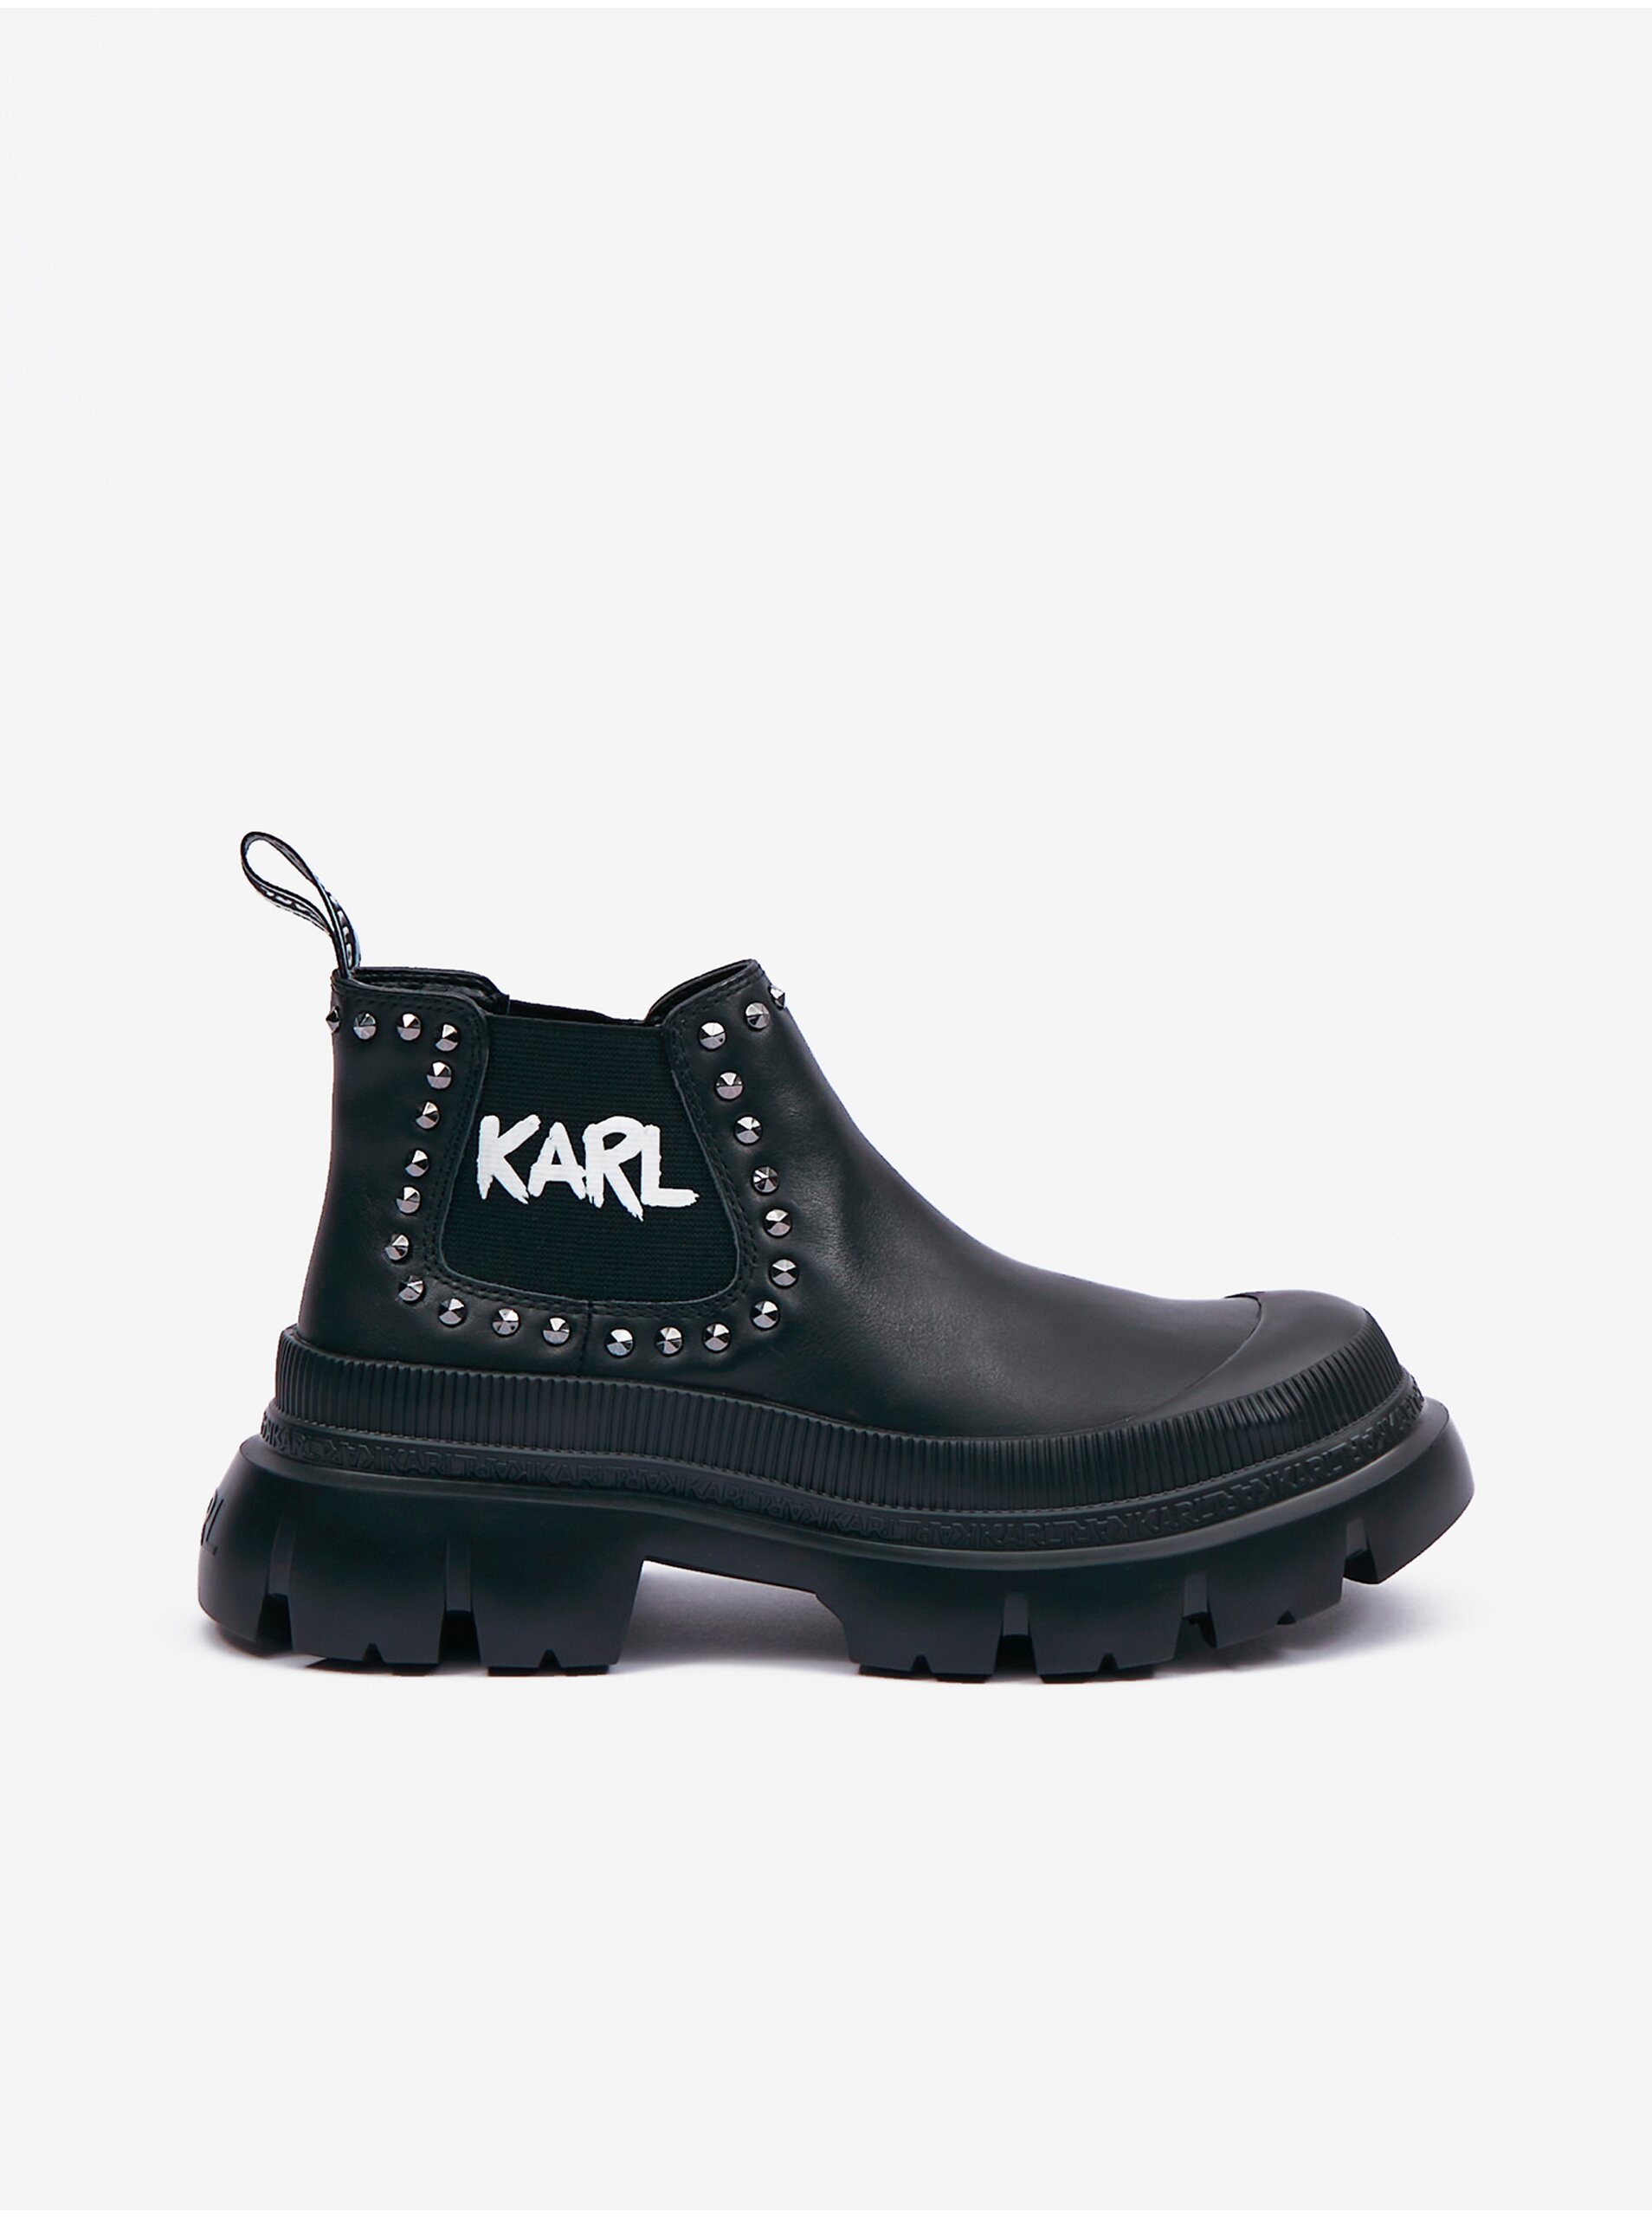 E-shop Čierne dámske kožené členkové topánky KARL LAGERFELD Trekka Max